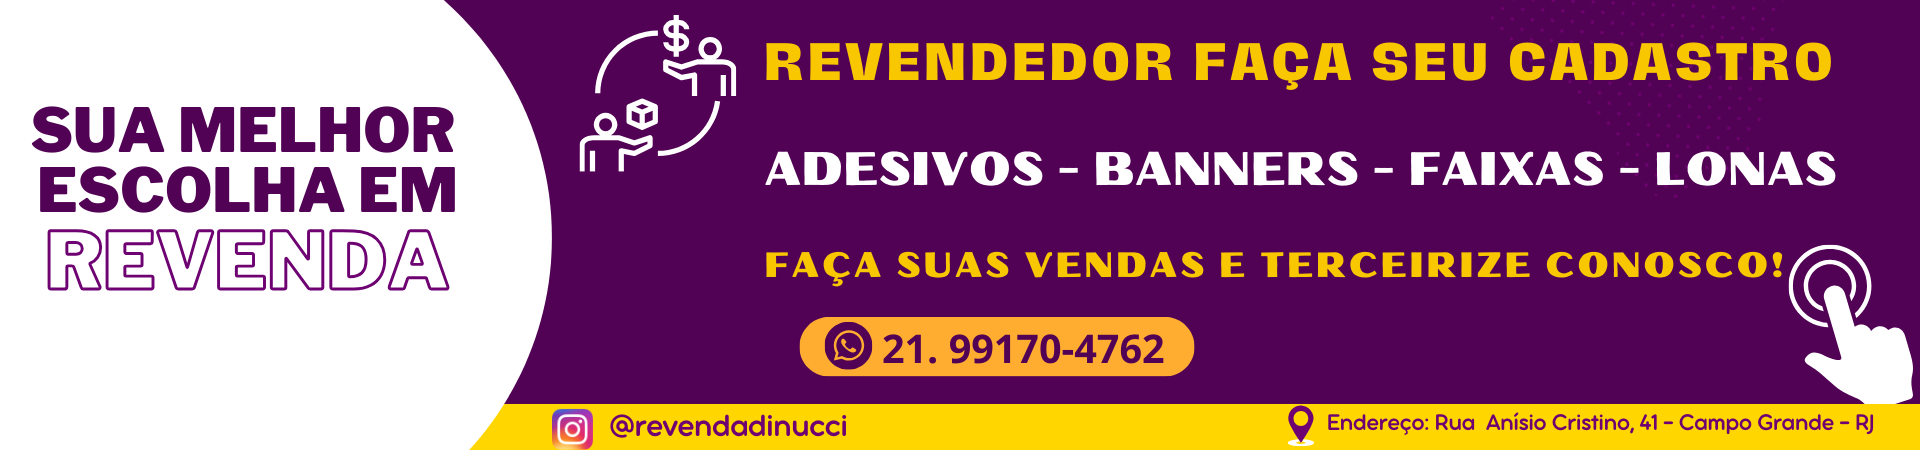 Banner Revenda